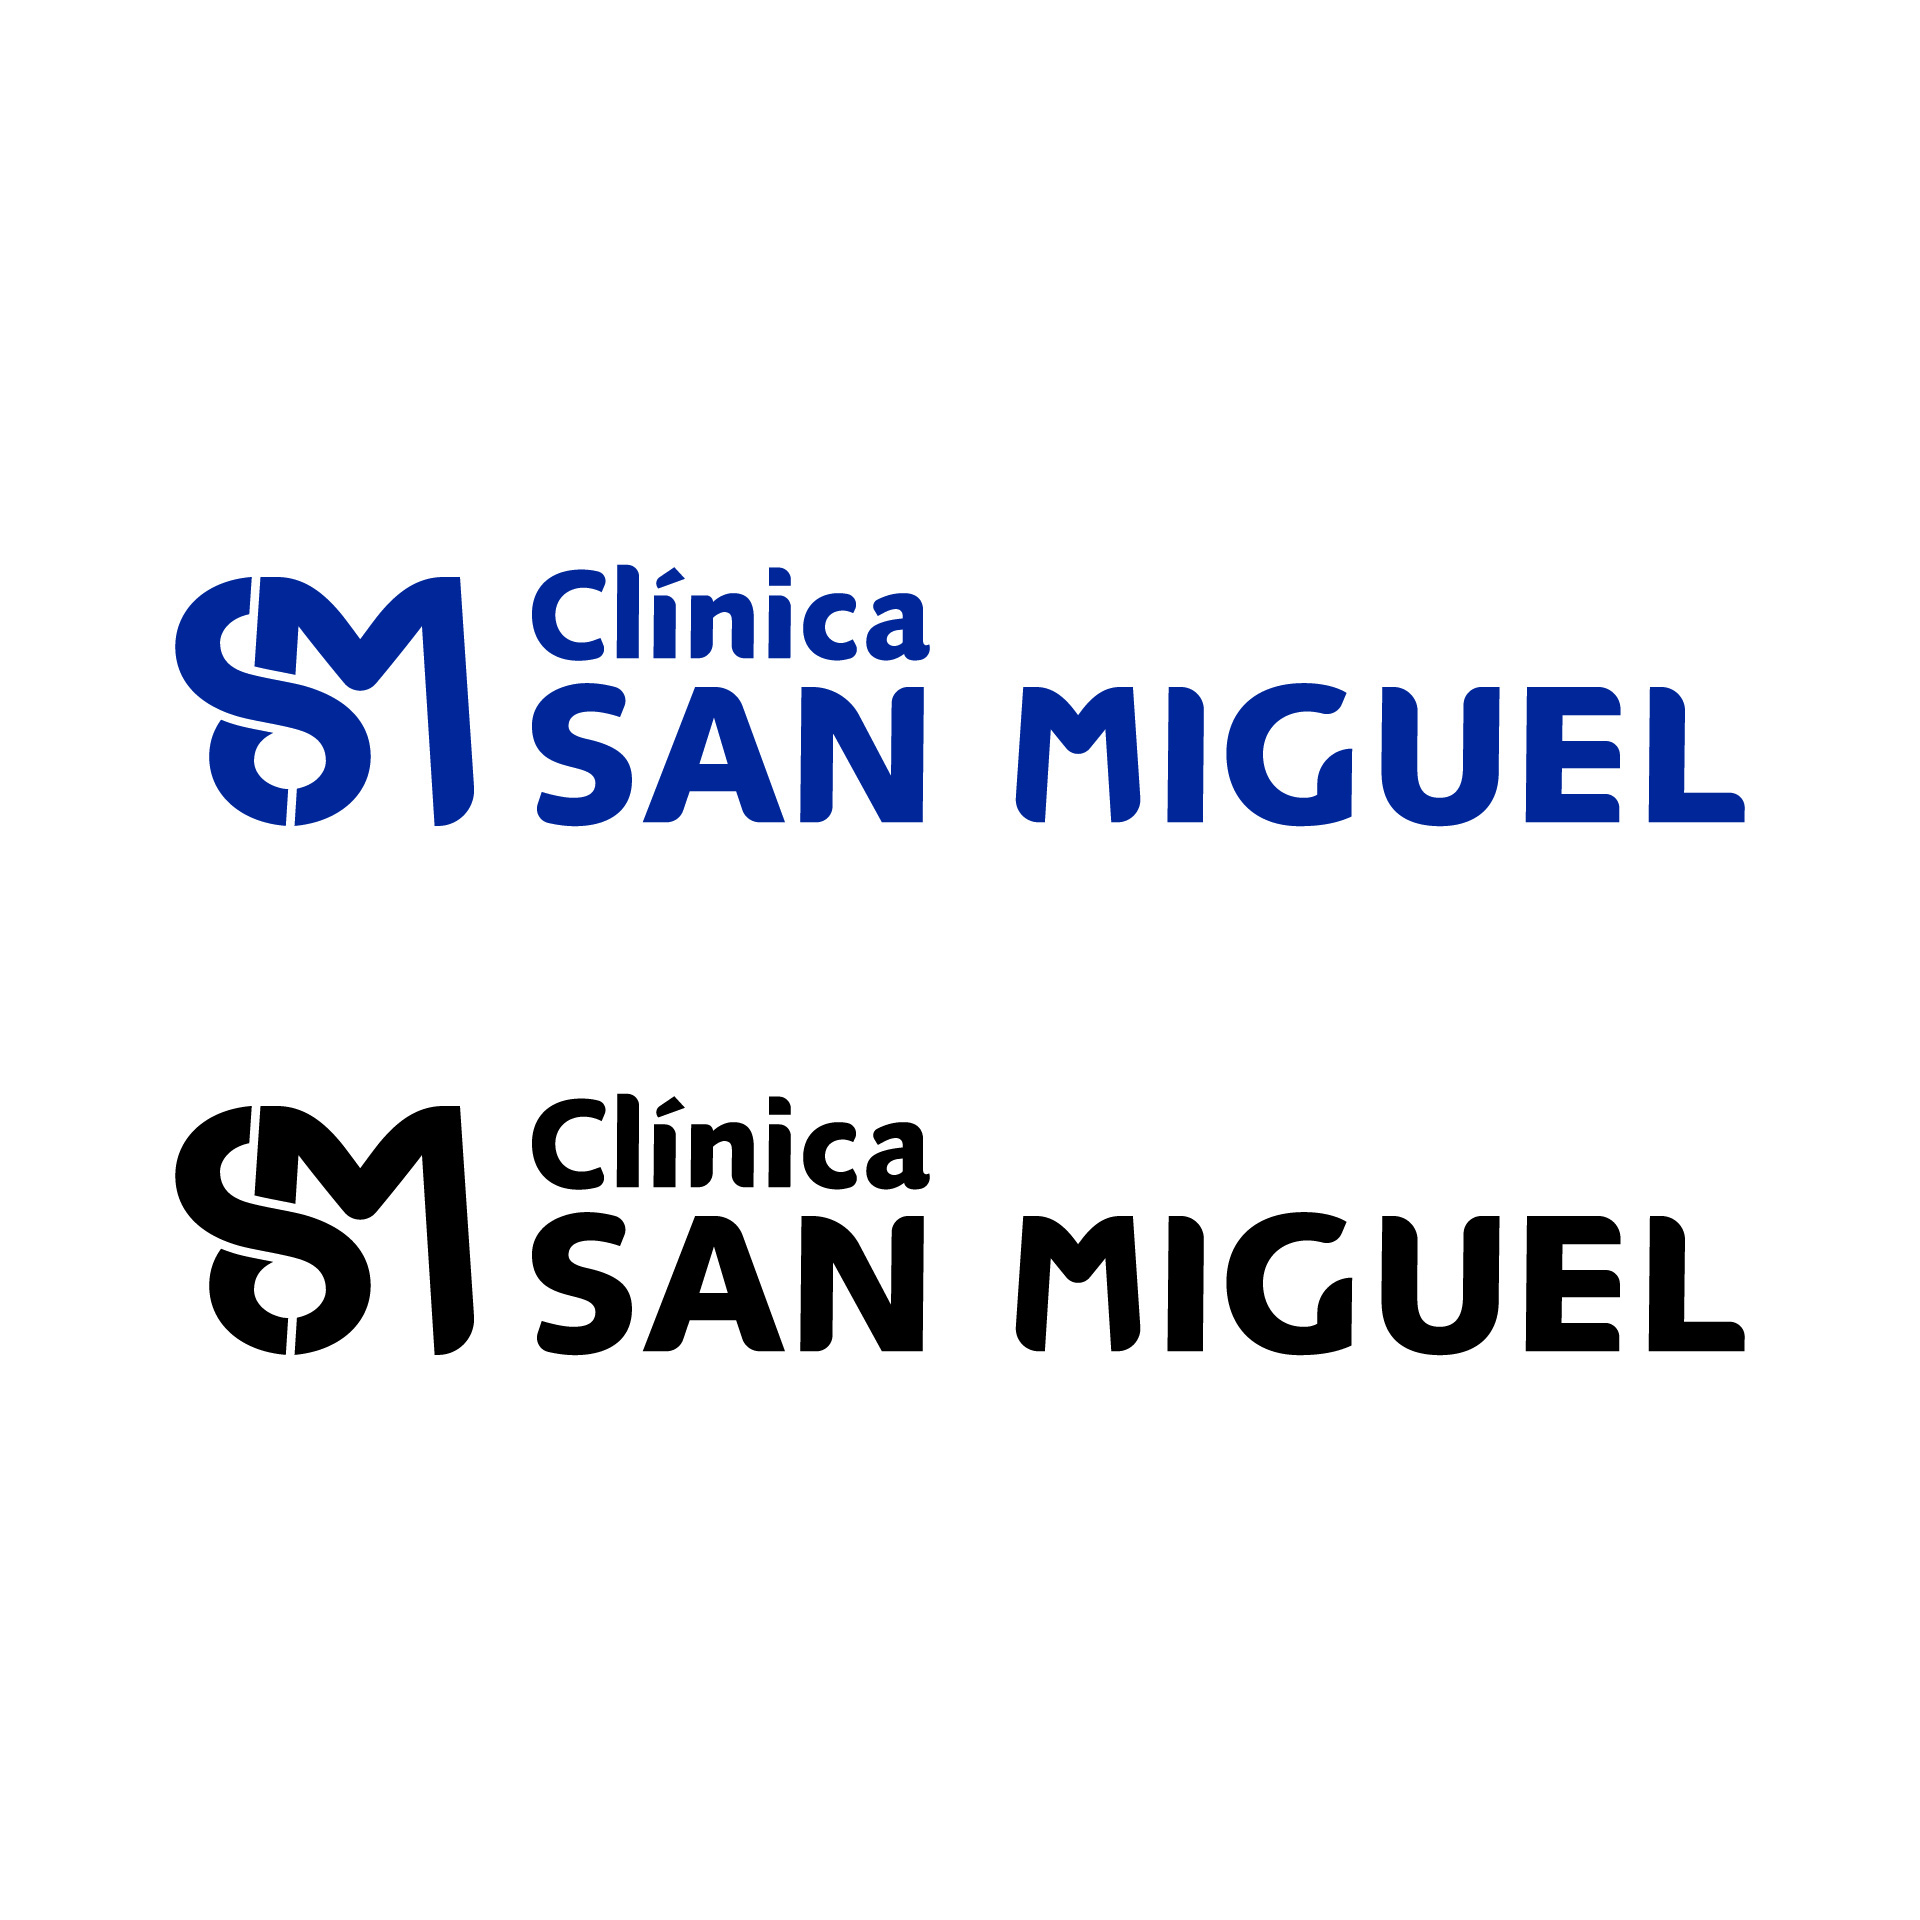 Diseño de Identidad Visual y Logotipo para la Clínica San Miguel